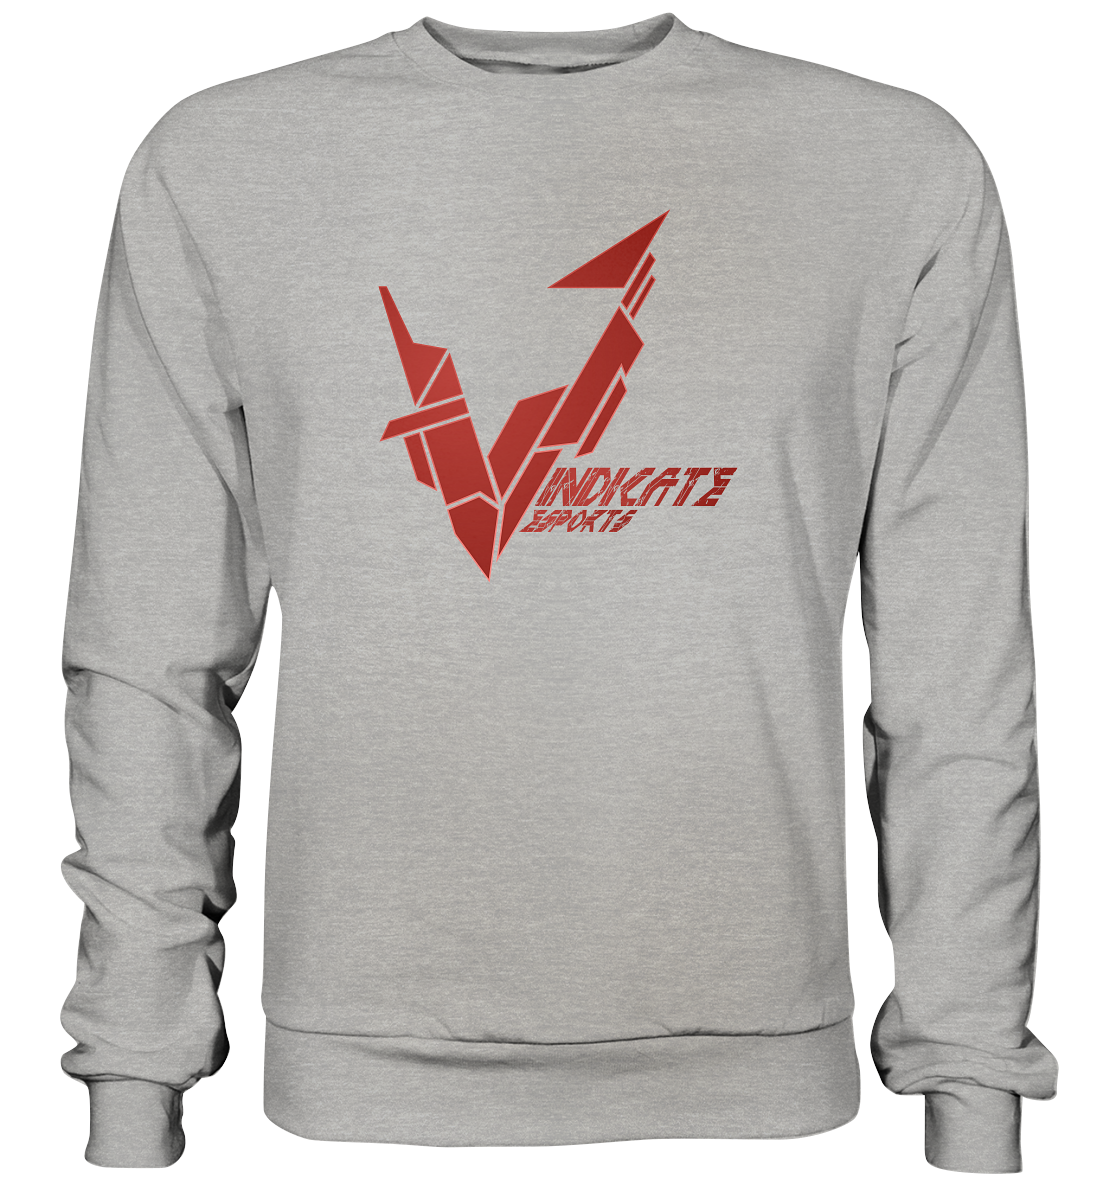 VINDICATE ESPORTS - Basic Sweatshirt